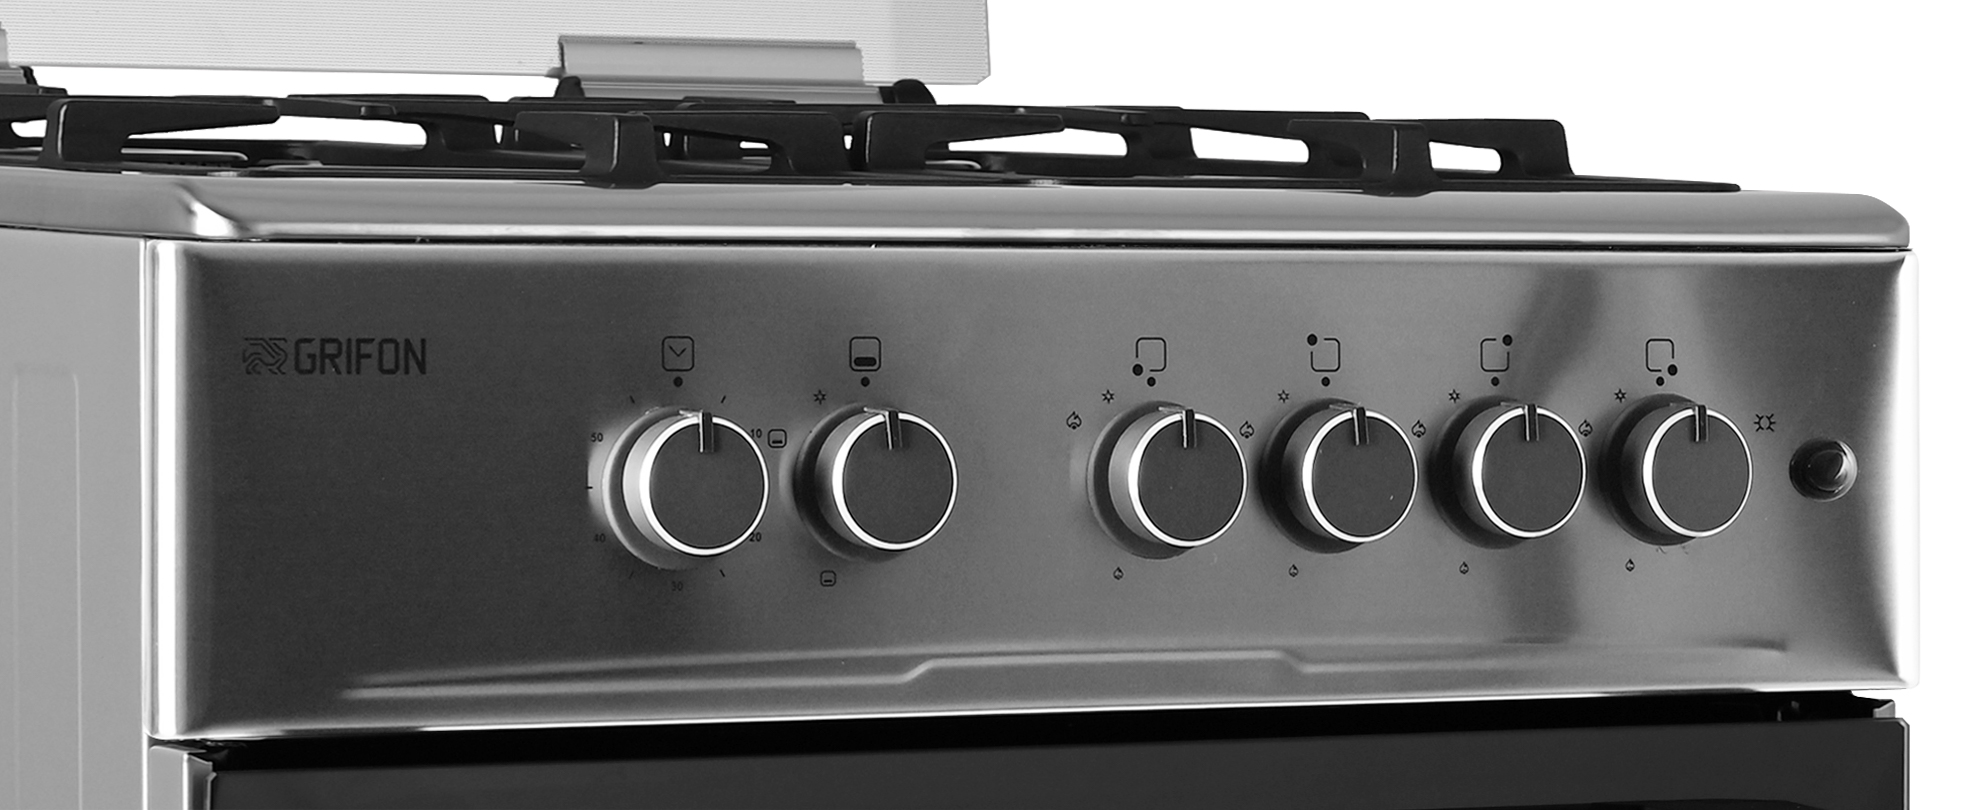 Кухонная плита Grifon G643X-CAWB3 обзор - фото 8